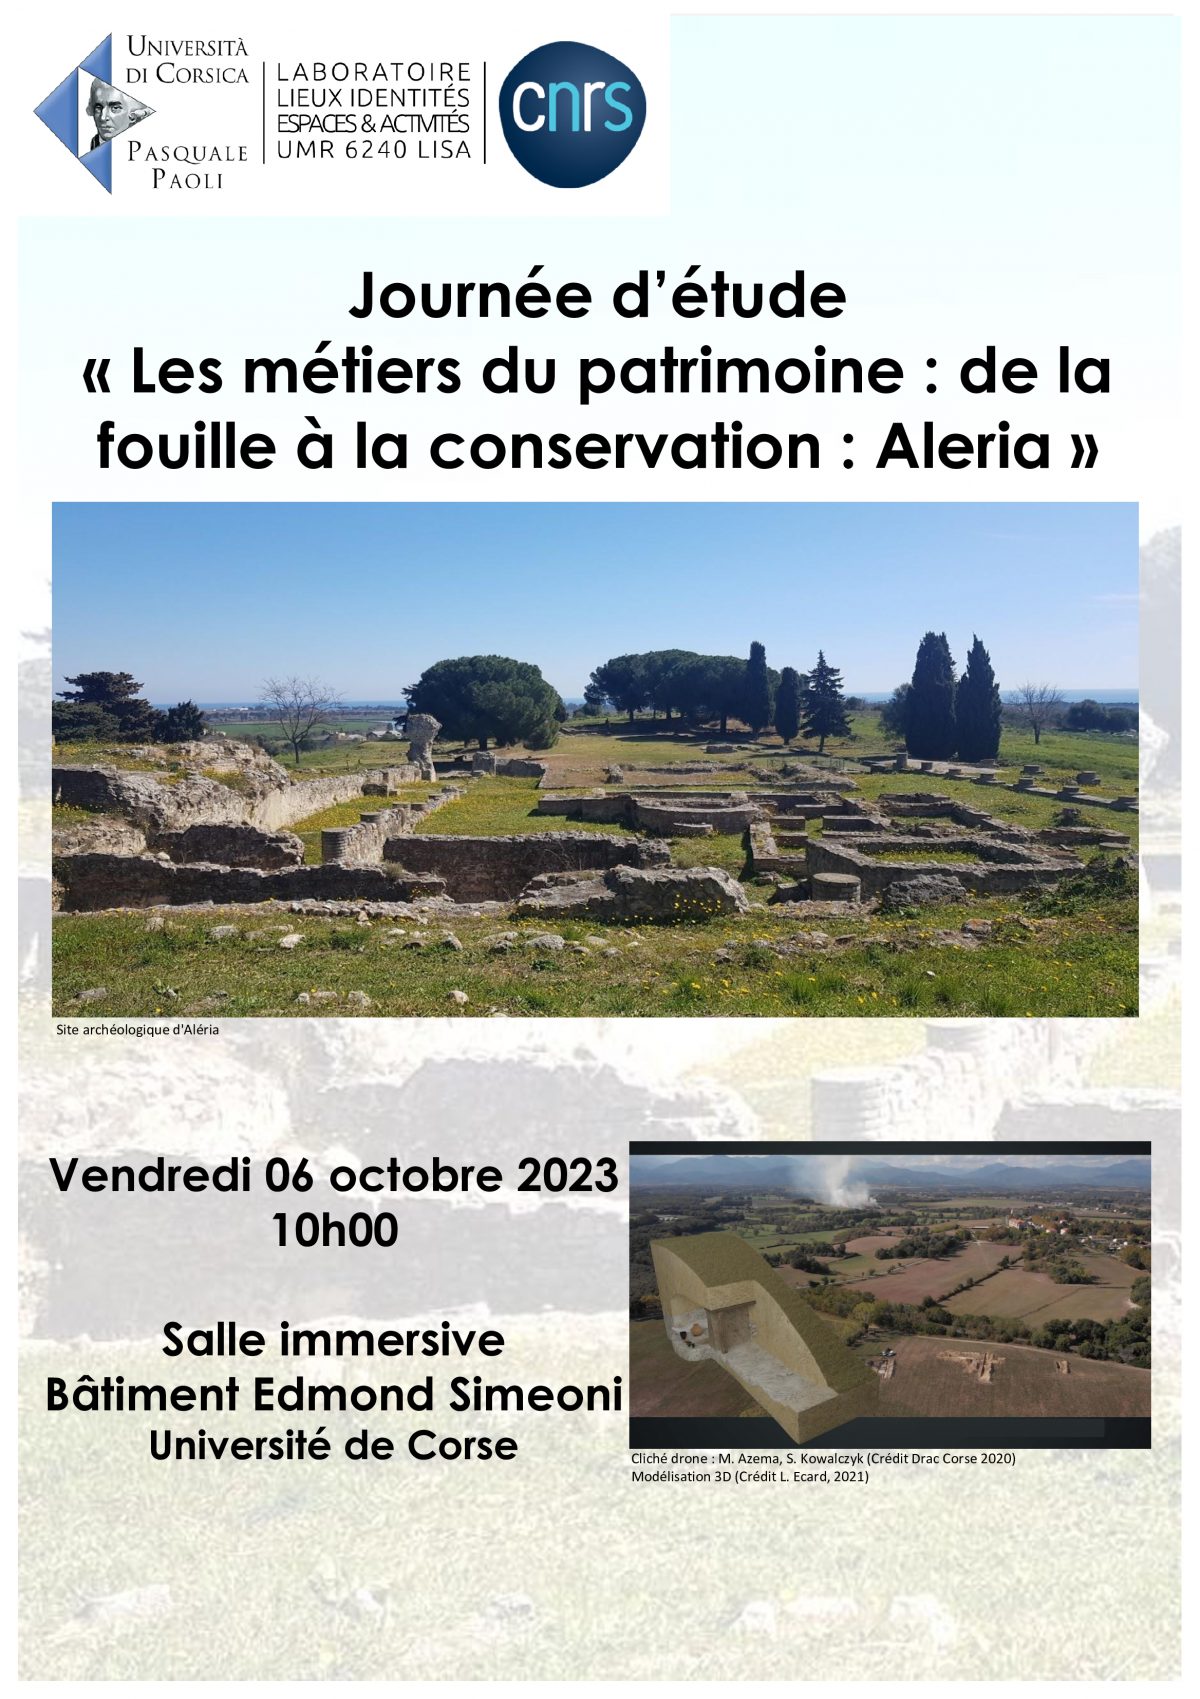 Journée d’étude « Les métiers du patrimoine: de la fouille à la conservation: Aleria »